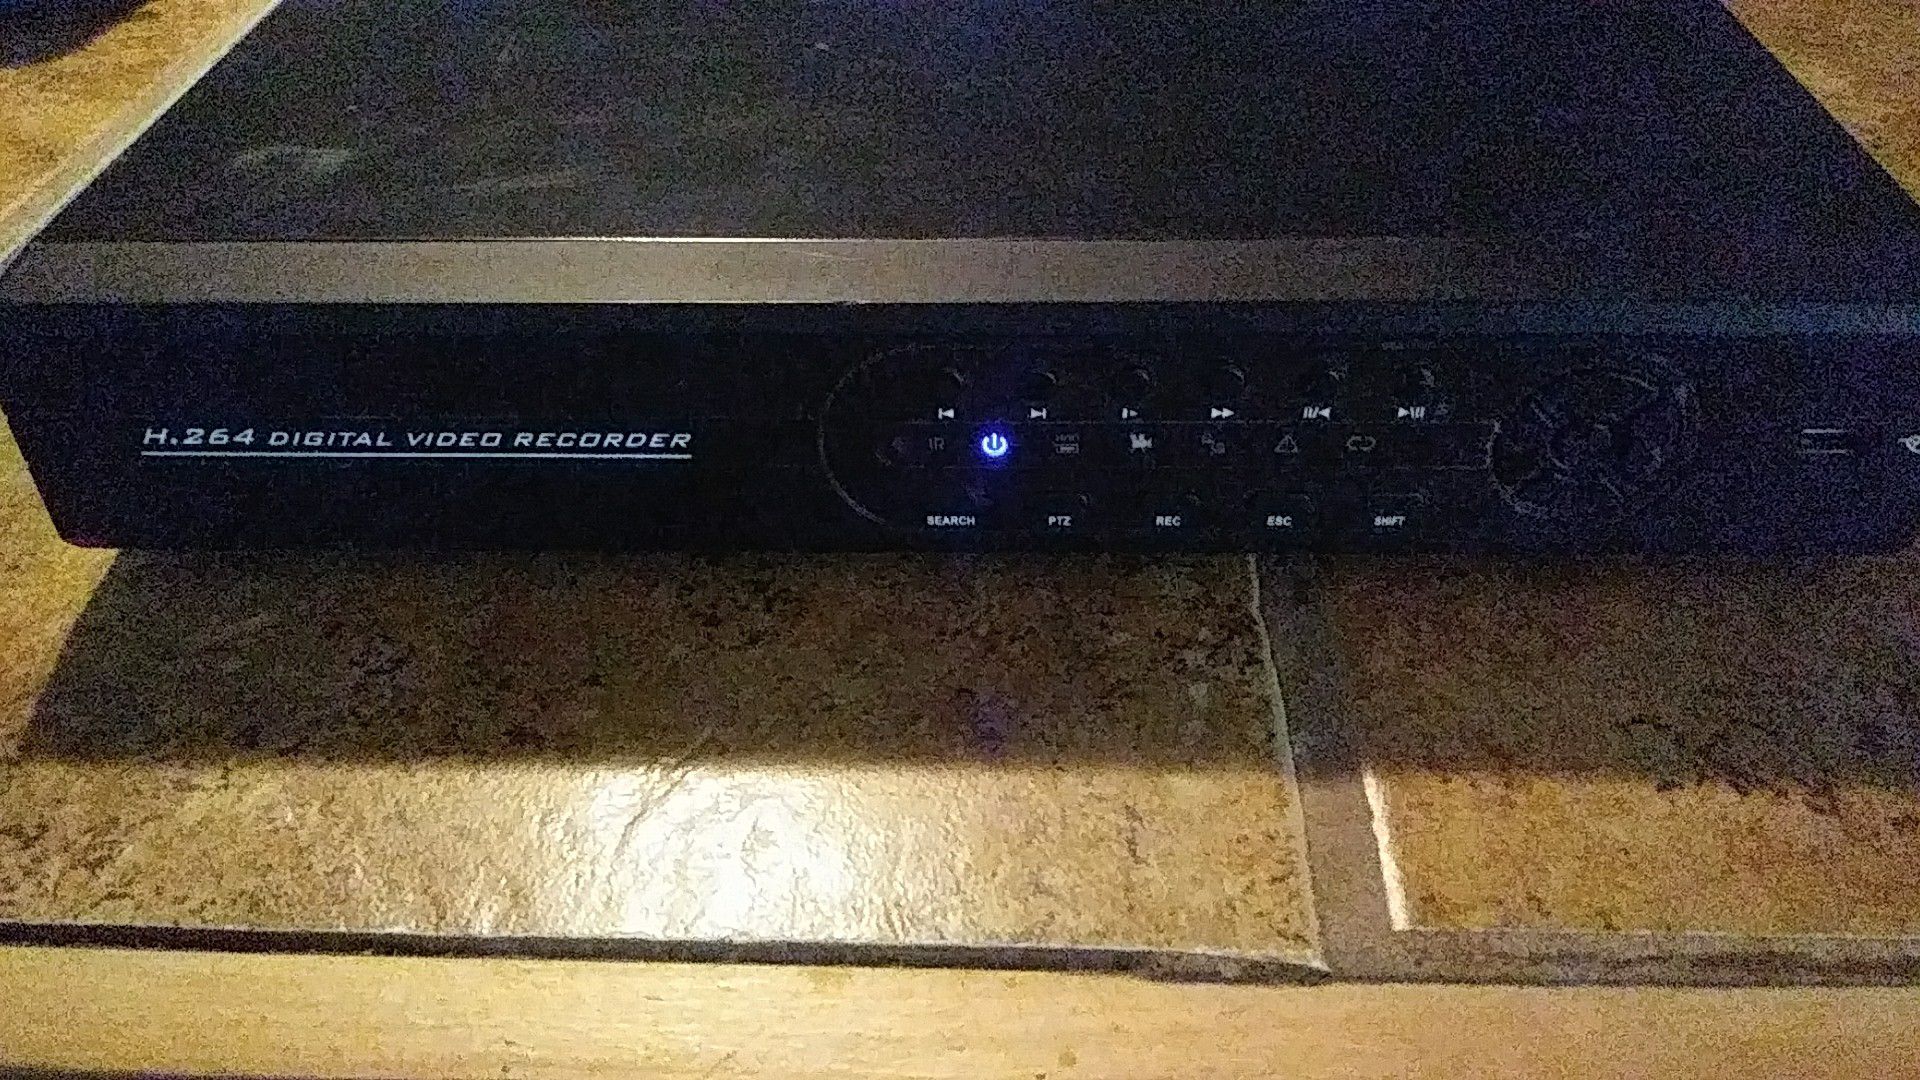 H.264 DVR